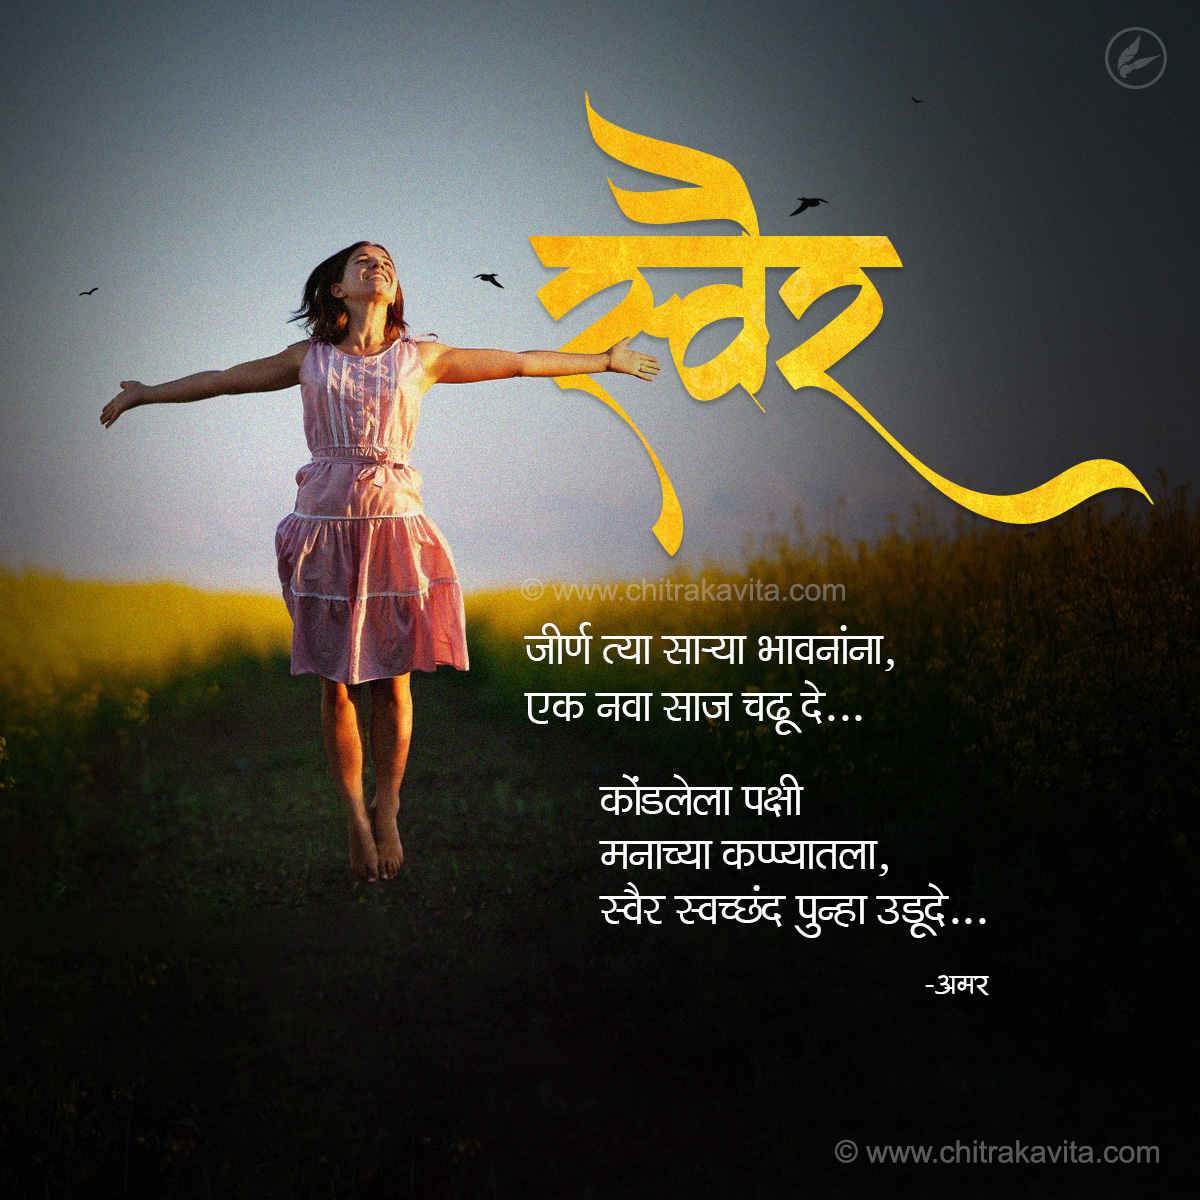 svair, marathi poem on life